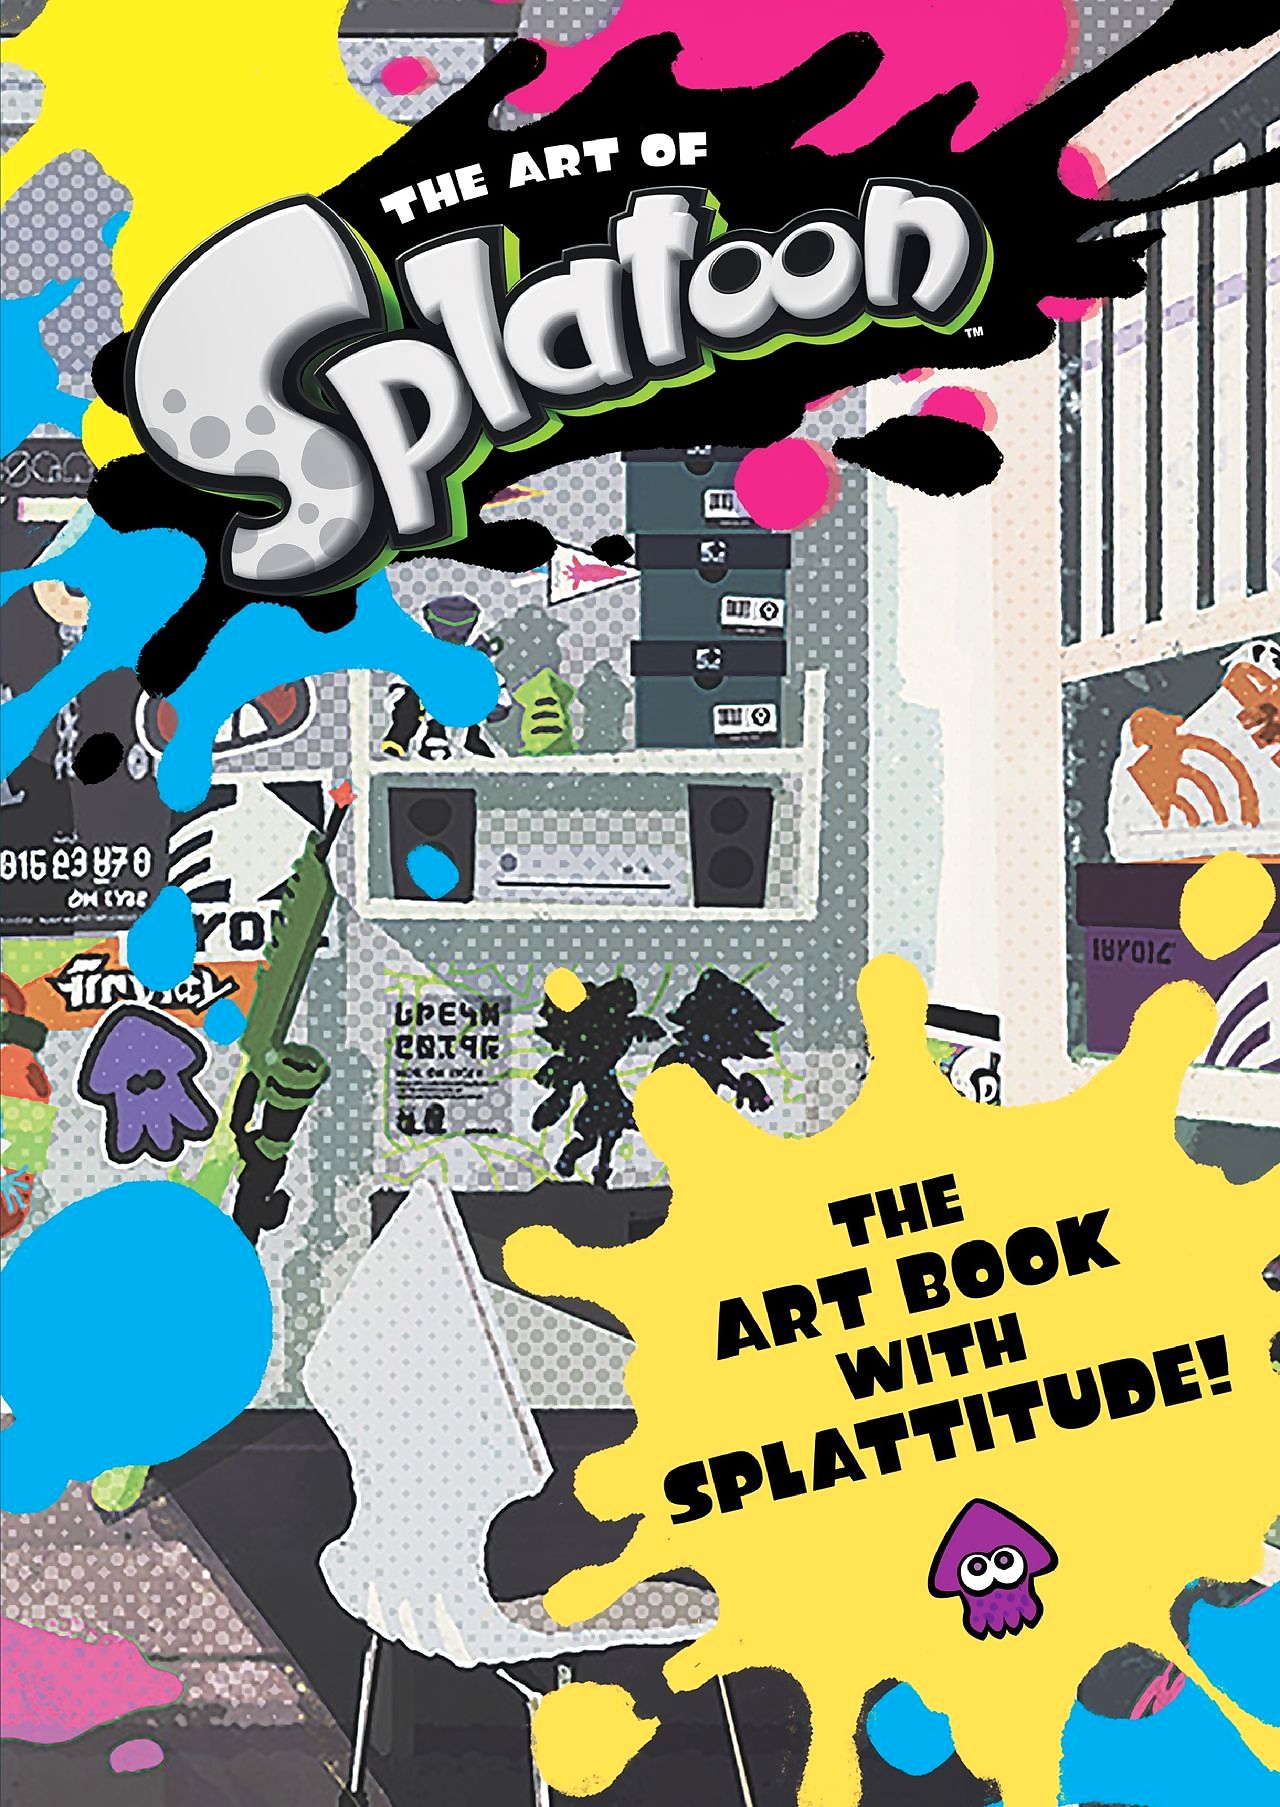 The Art of Splatoon